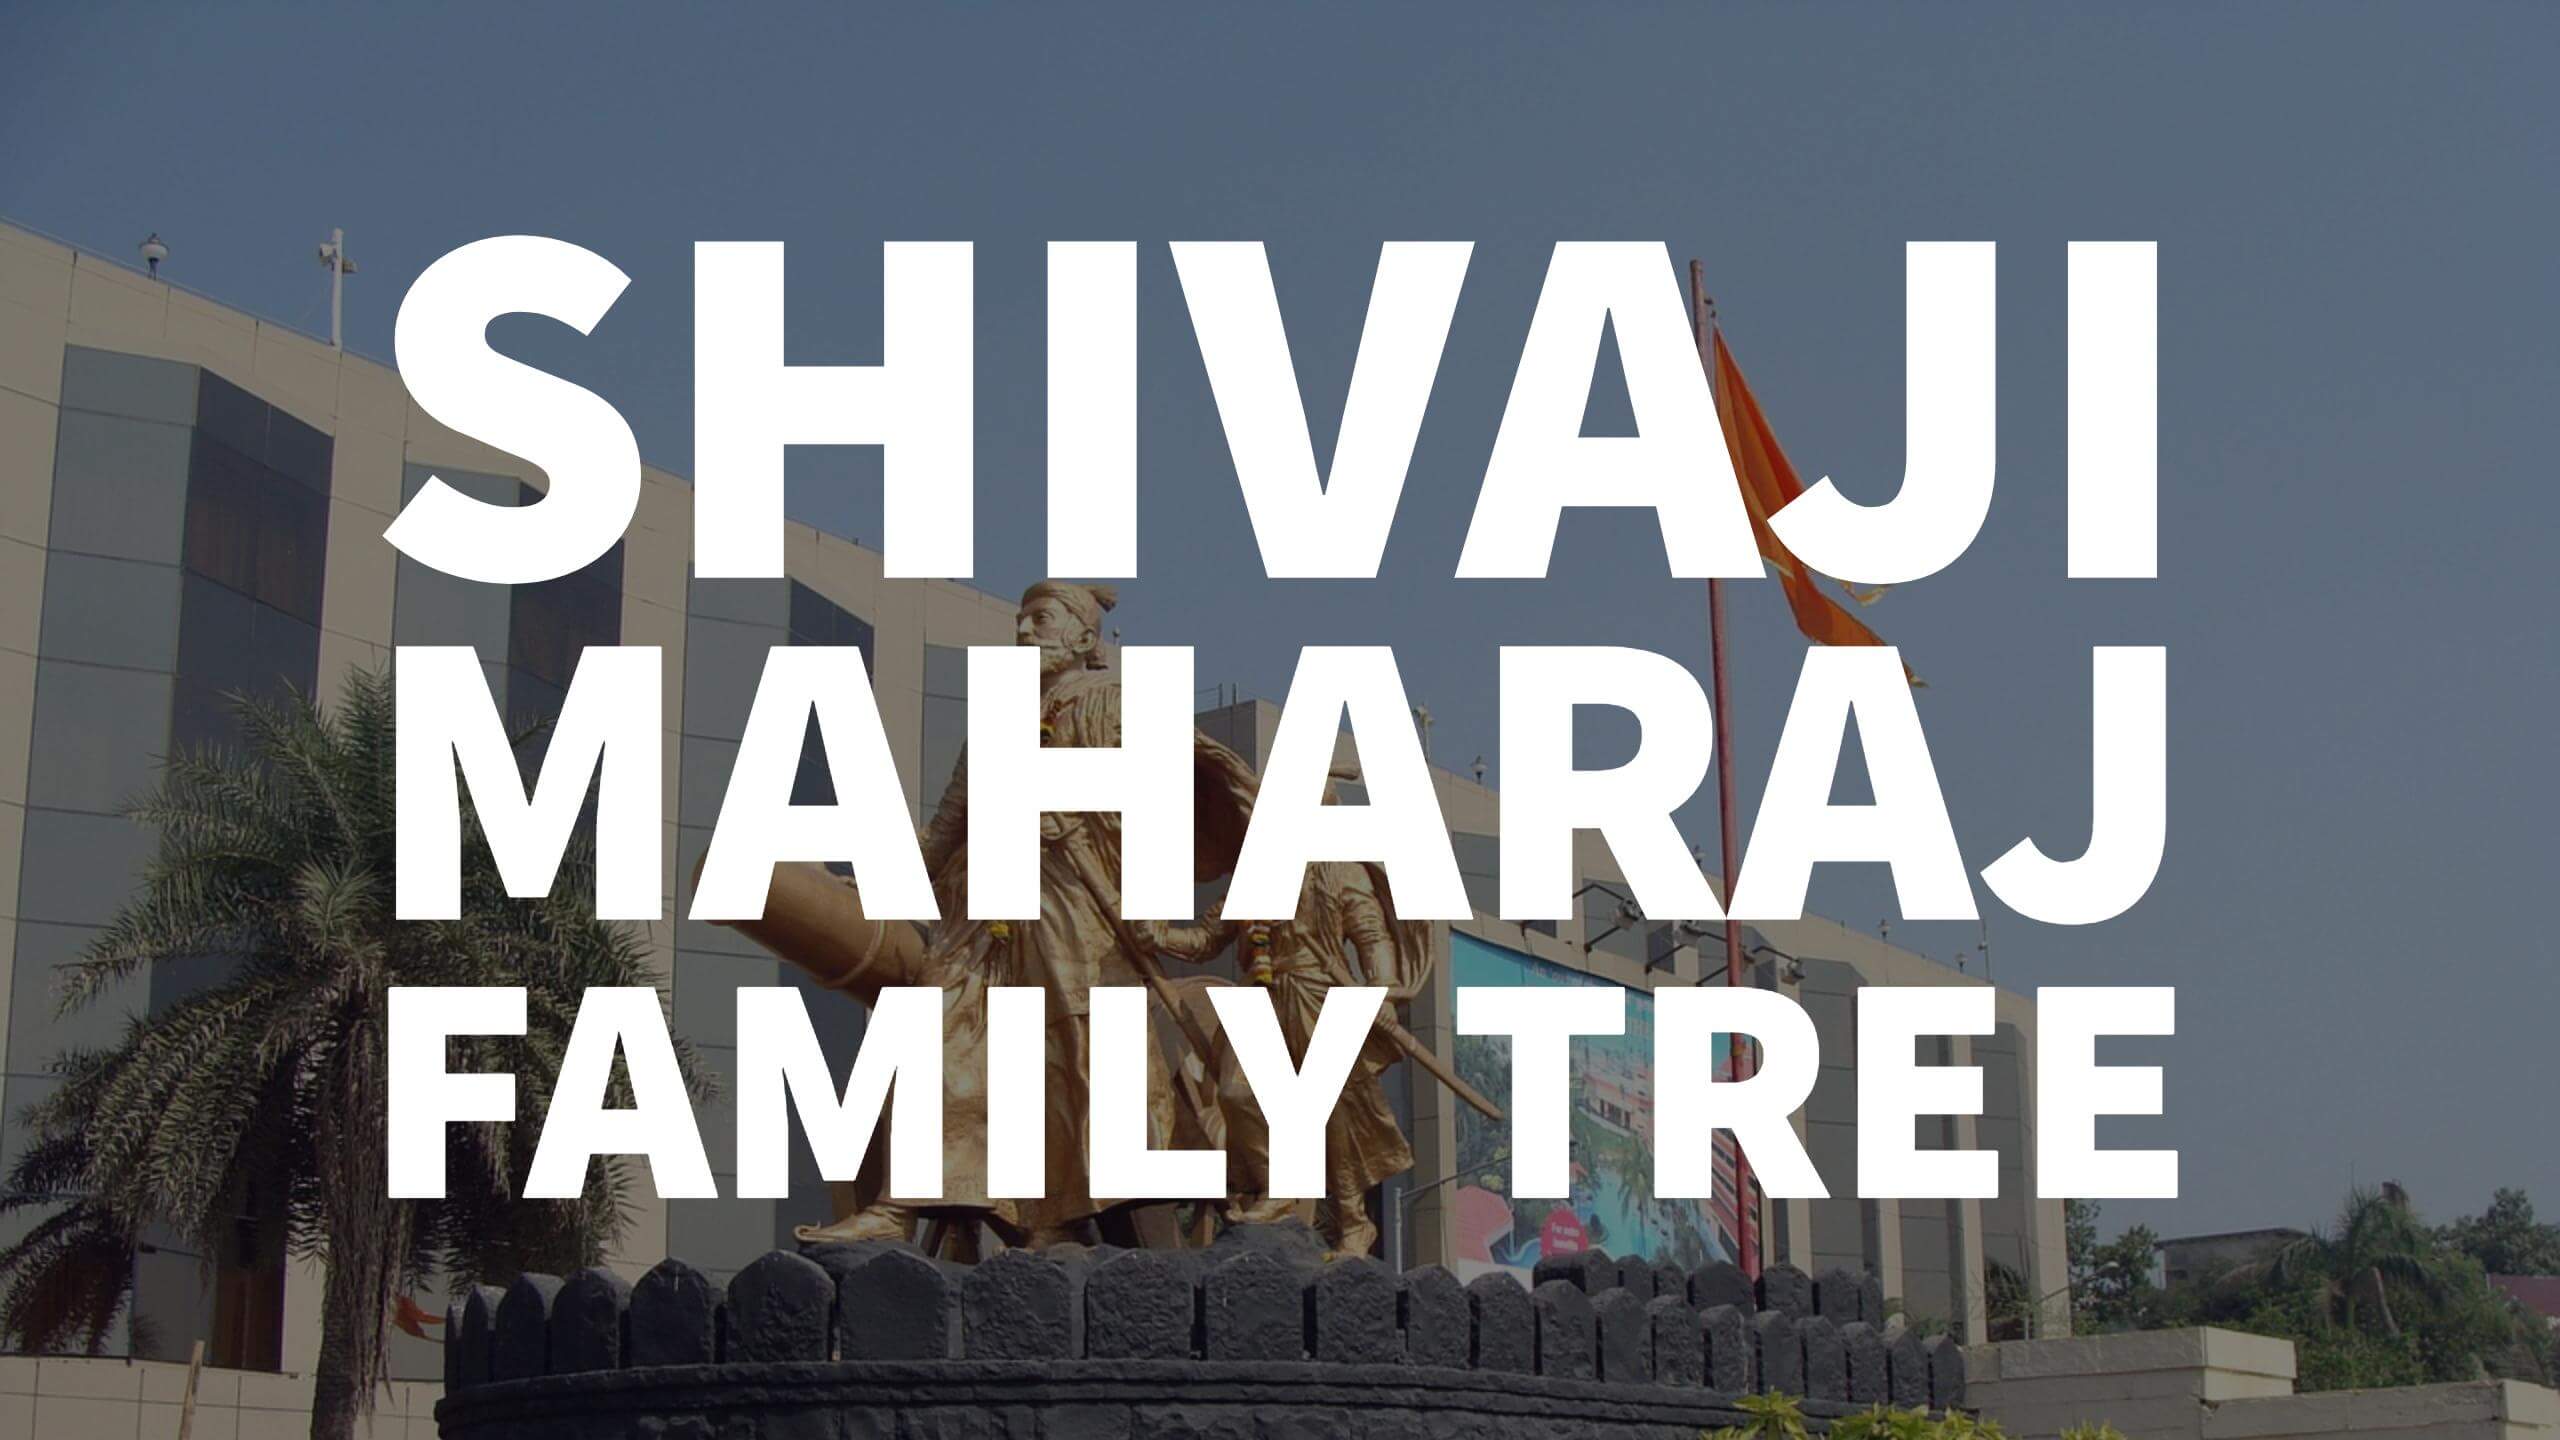 Chhatrapati Shivaji Maharaj Family Tree - Family Tree Of Shivaji Maharaj , HD Wallpaper & Backgrounds